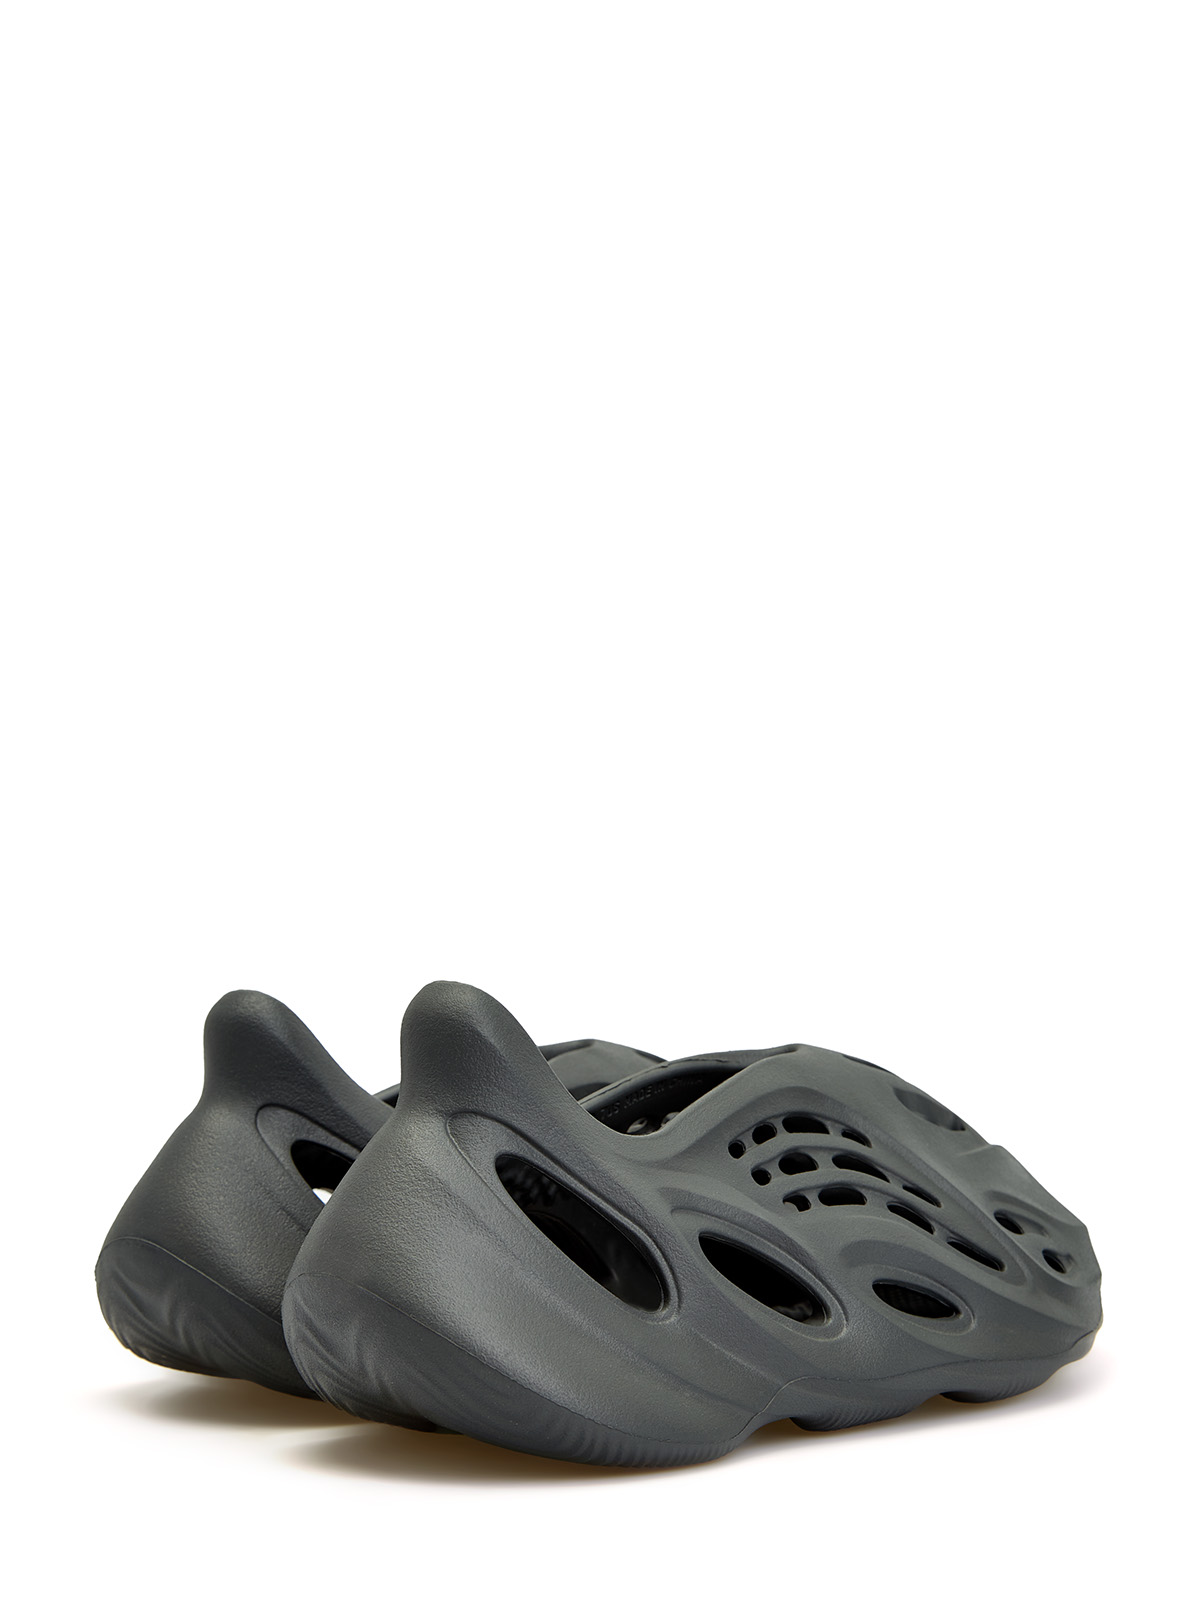 Кроссовки Yeezy Foam Runner 'Carbon' Yeezy, цвет черный, размер 40.5 - фото 3